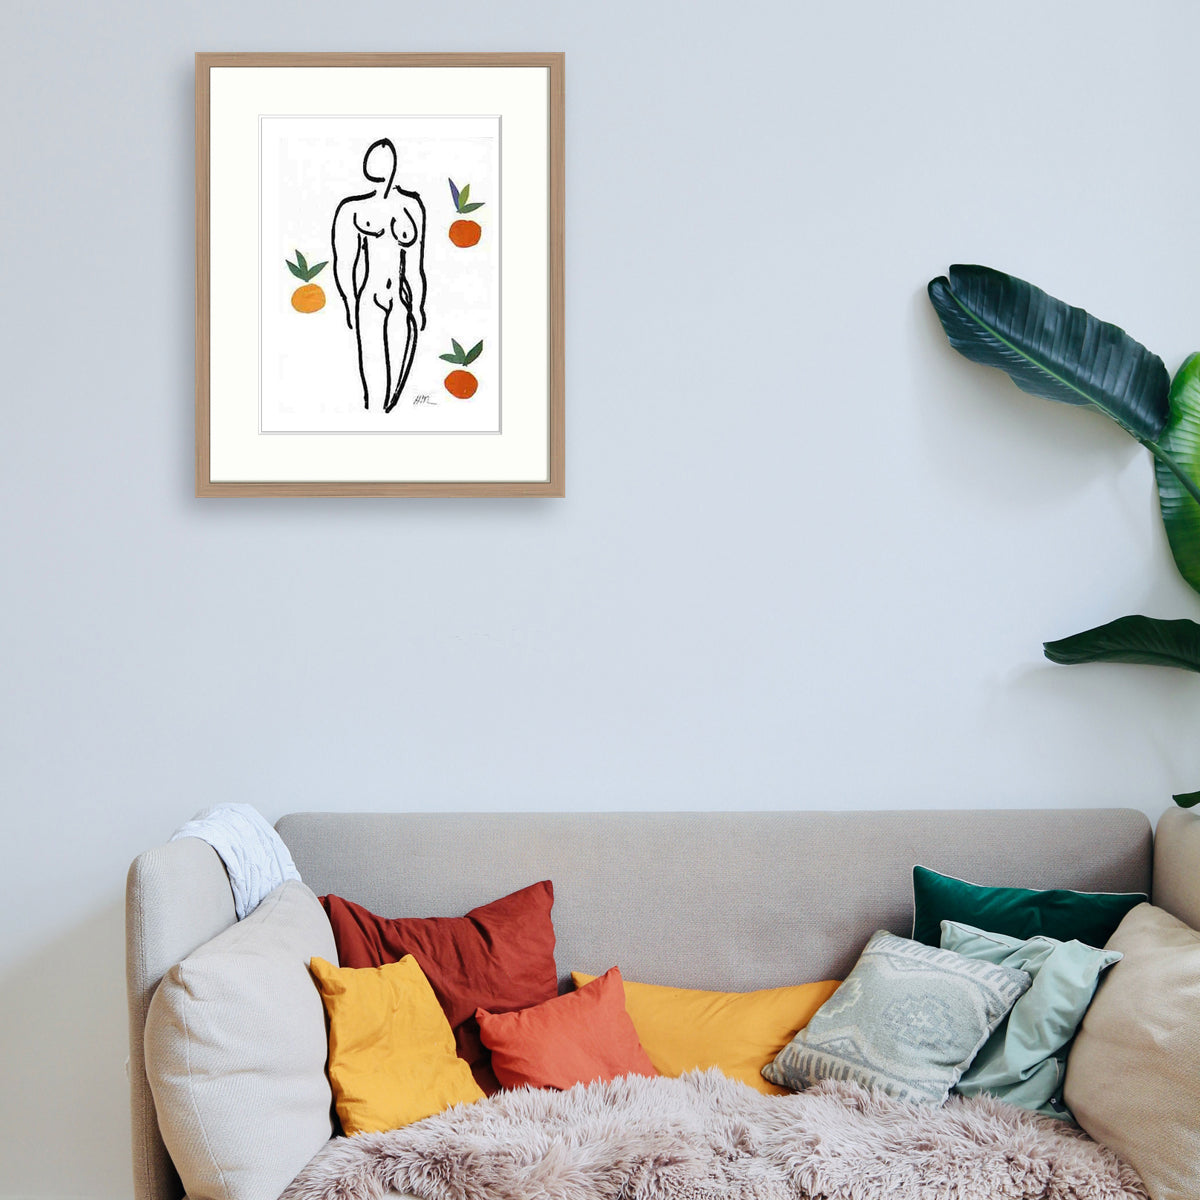 Matisse - La femme aux oranges Le Cadre Décoration intérieure Tableaux cadre bois affiche poster oeuvre d'art rapport qualité prix pas cher peintre célèbre